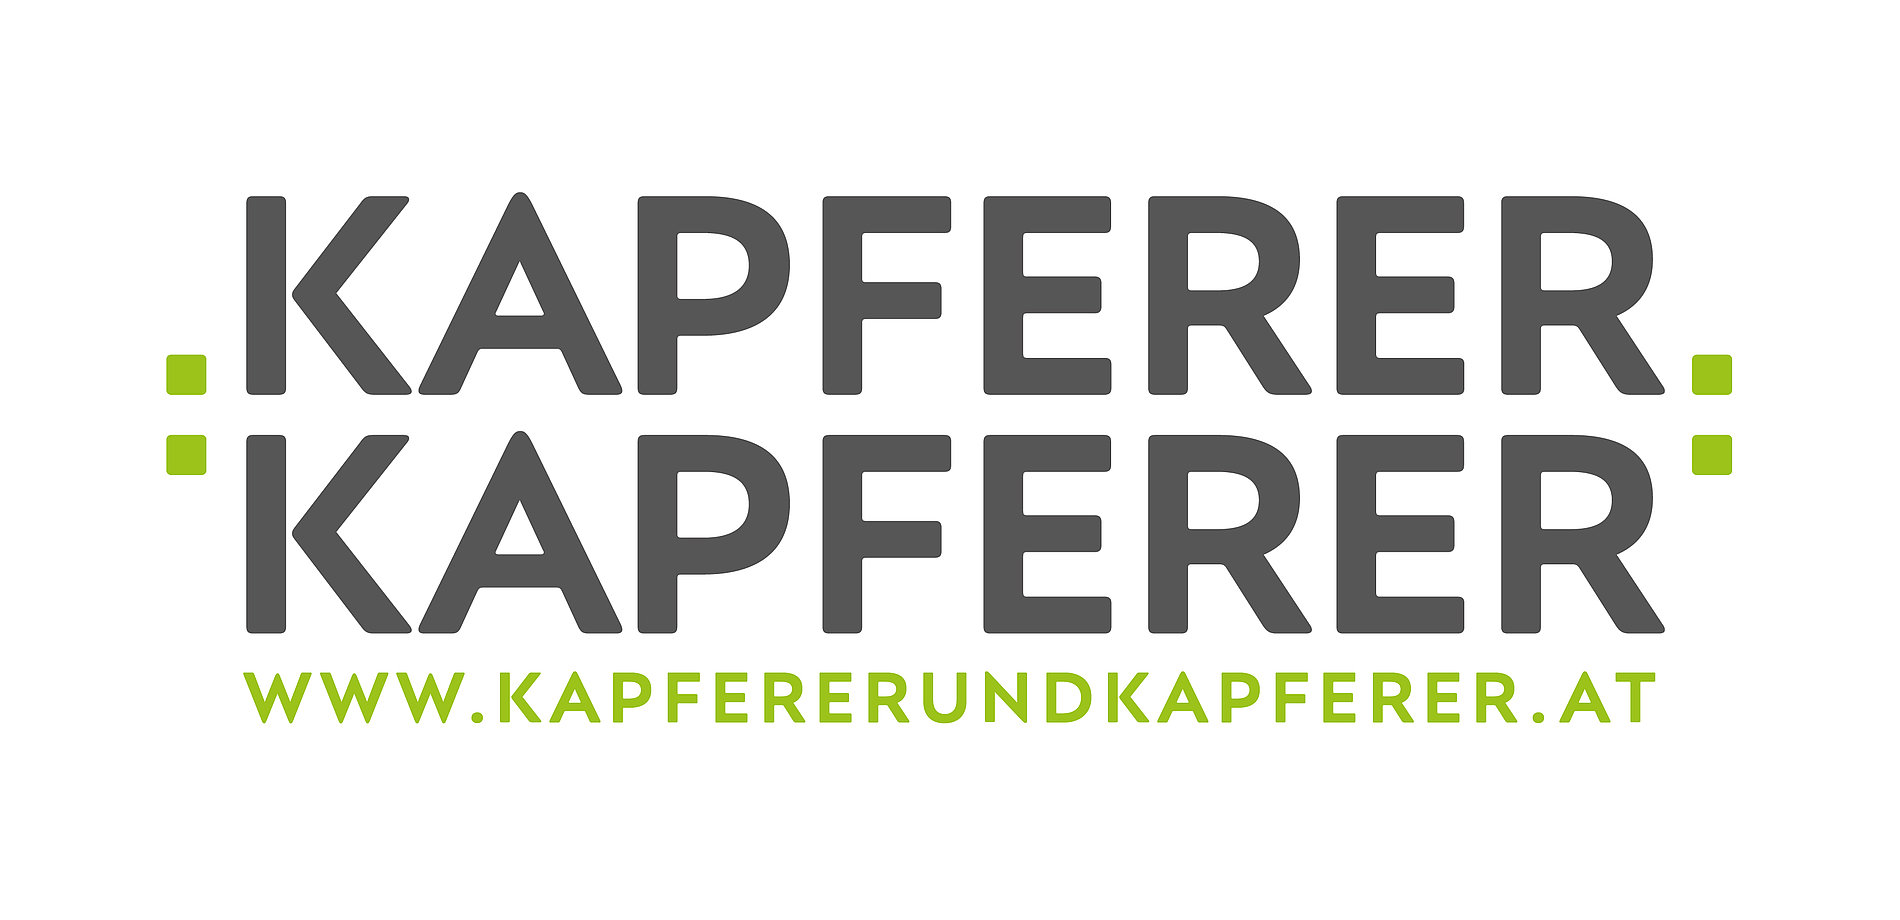 Kapferer und Kapferer Logo mit URL